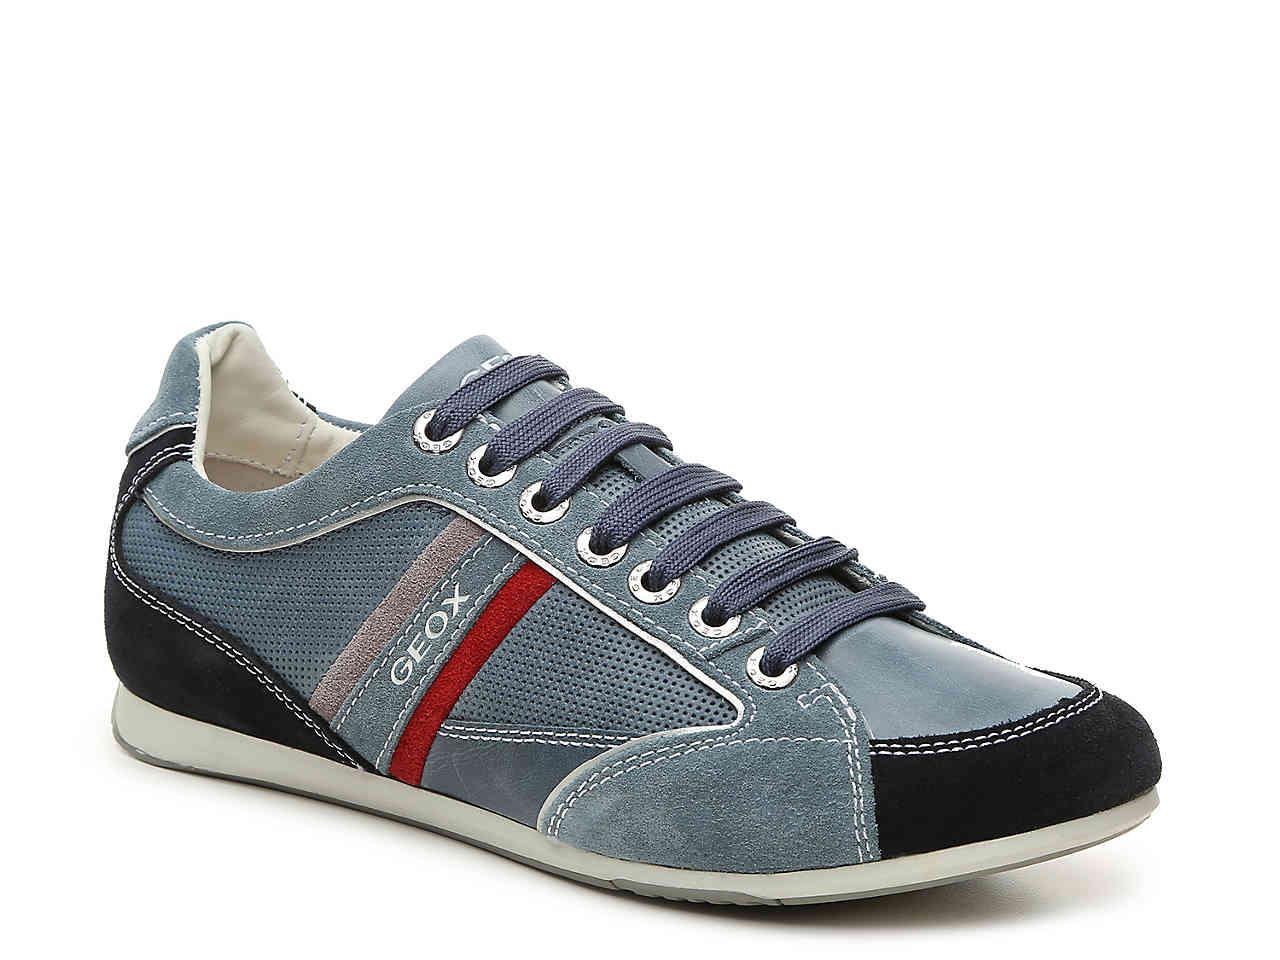 Geox Leather Andrea Sneaker in Blue - Lyst